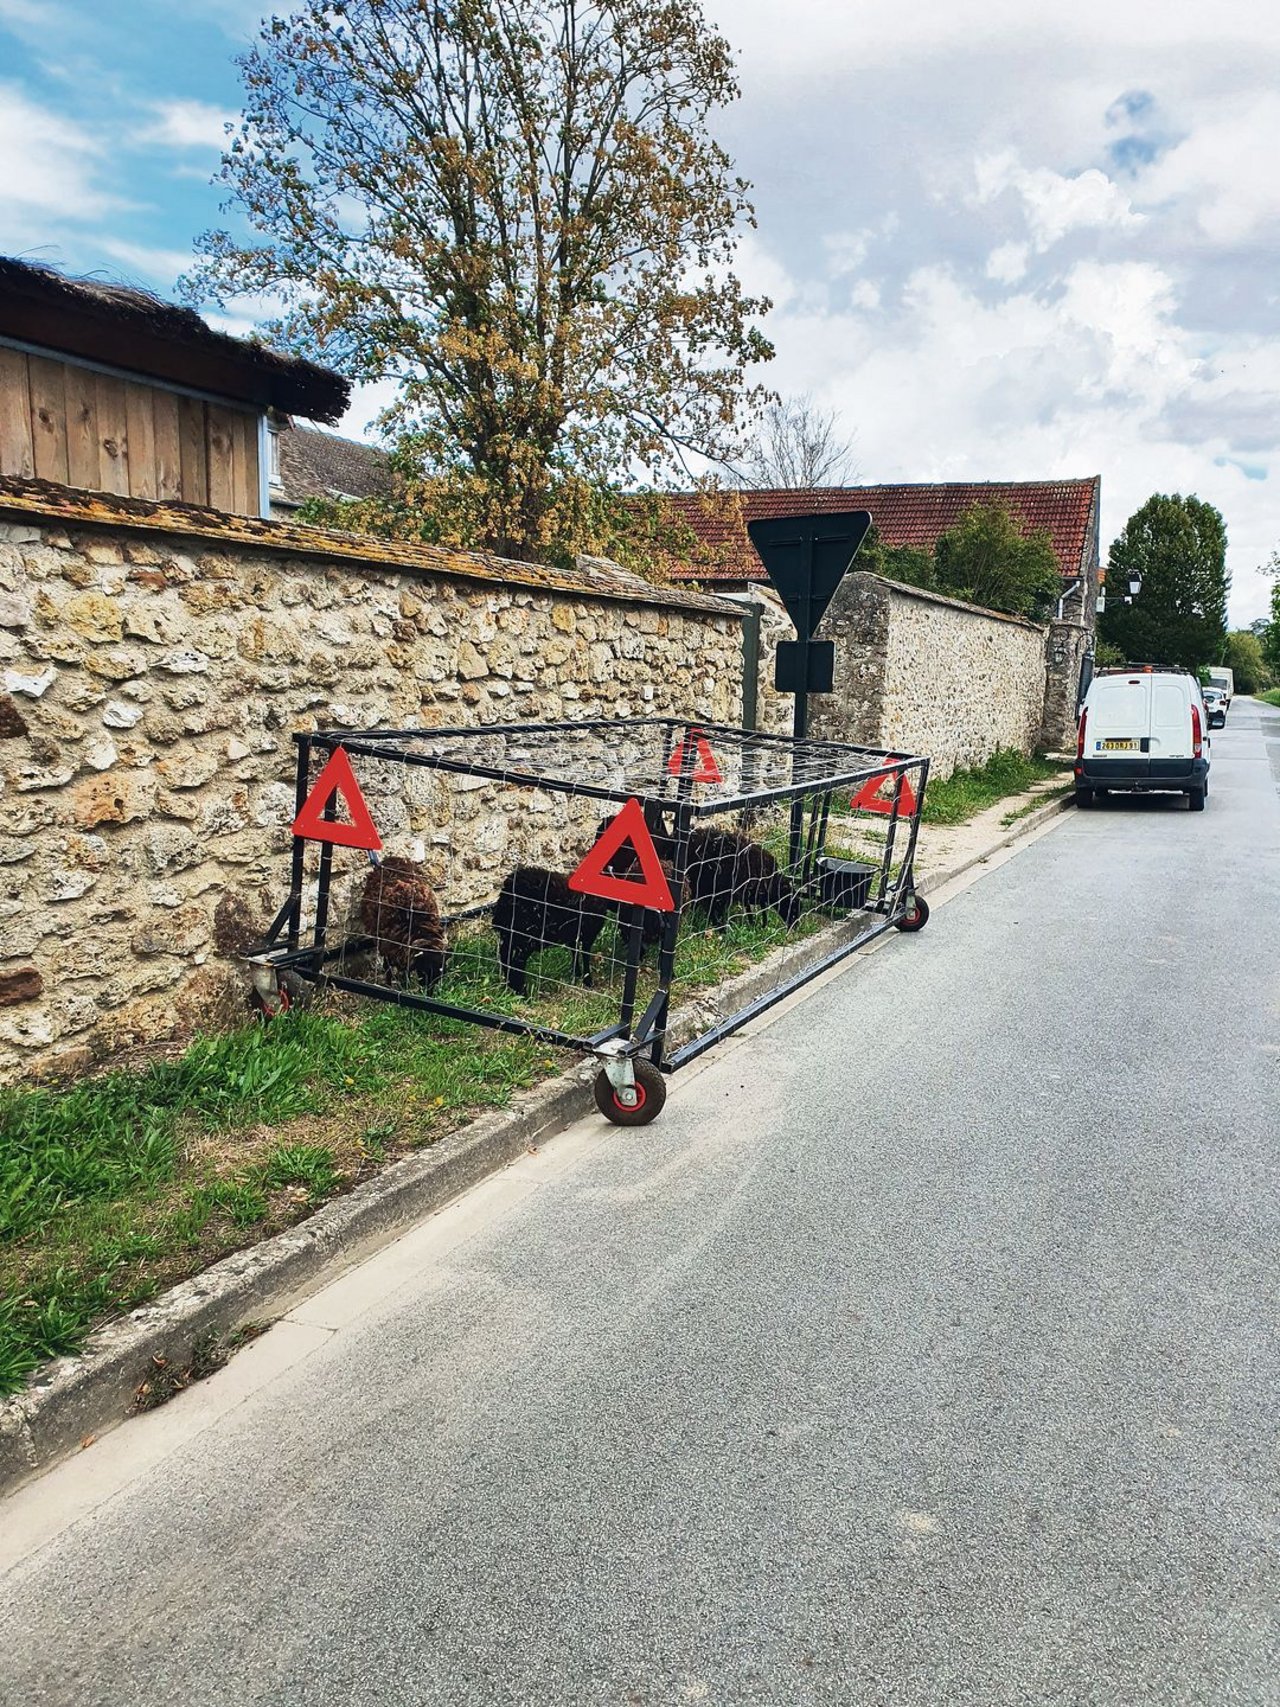 Ouessantschafe (auch Bretonische Zwergschafe), die kleinsten Schafe Europas, helfen in der Gemeinde Janvry (F) die Strassenränder zu mähen. (Bild Christian Schoettl)